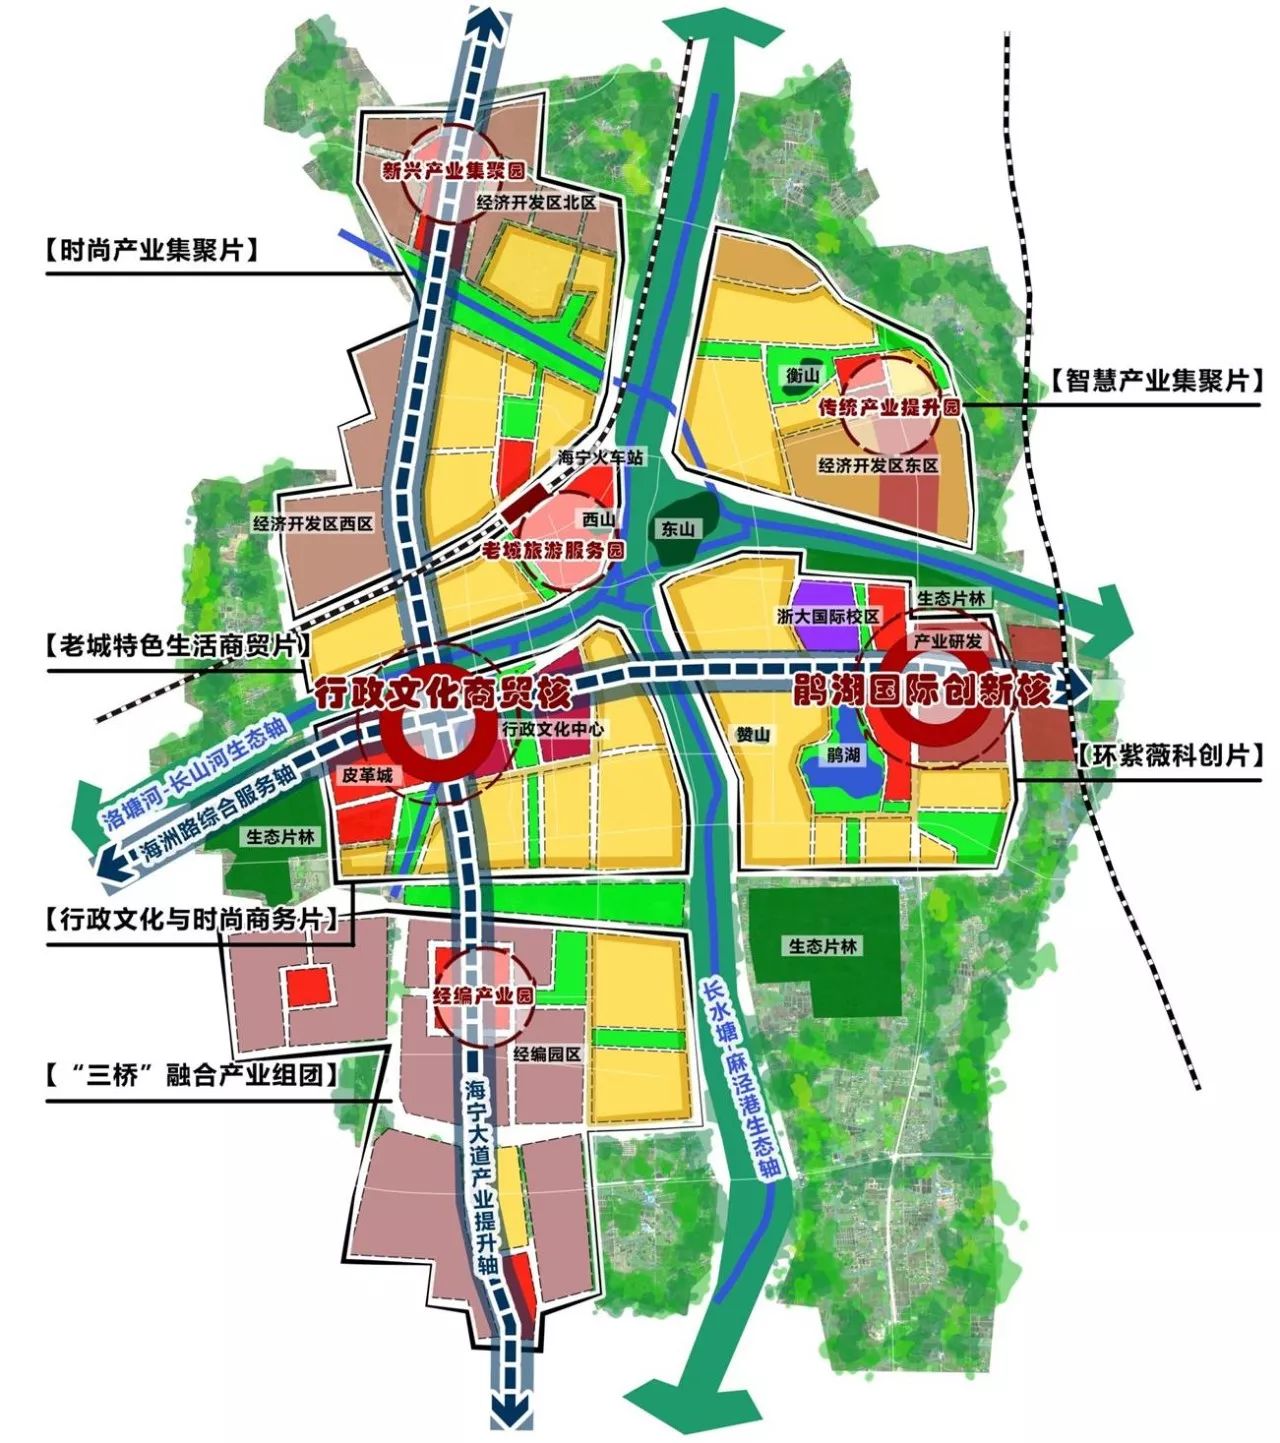 定了!未来20年海宁中心城区大变样!杭州三环公